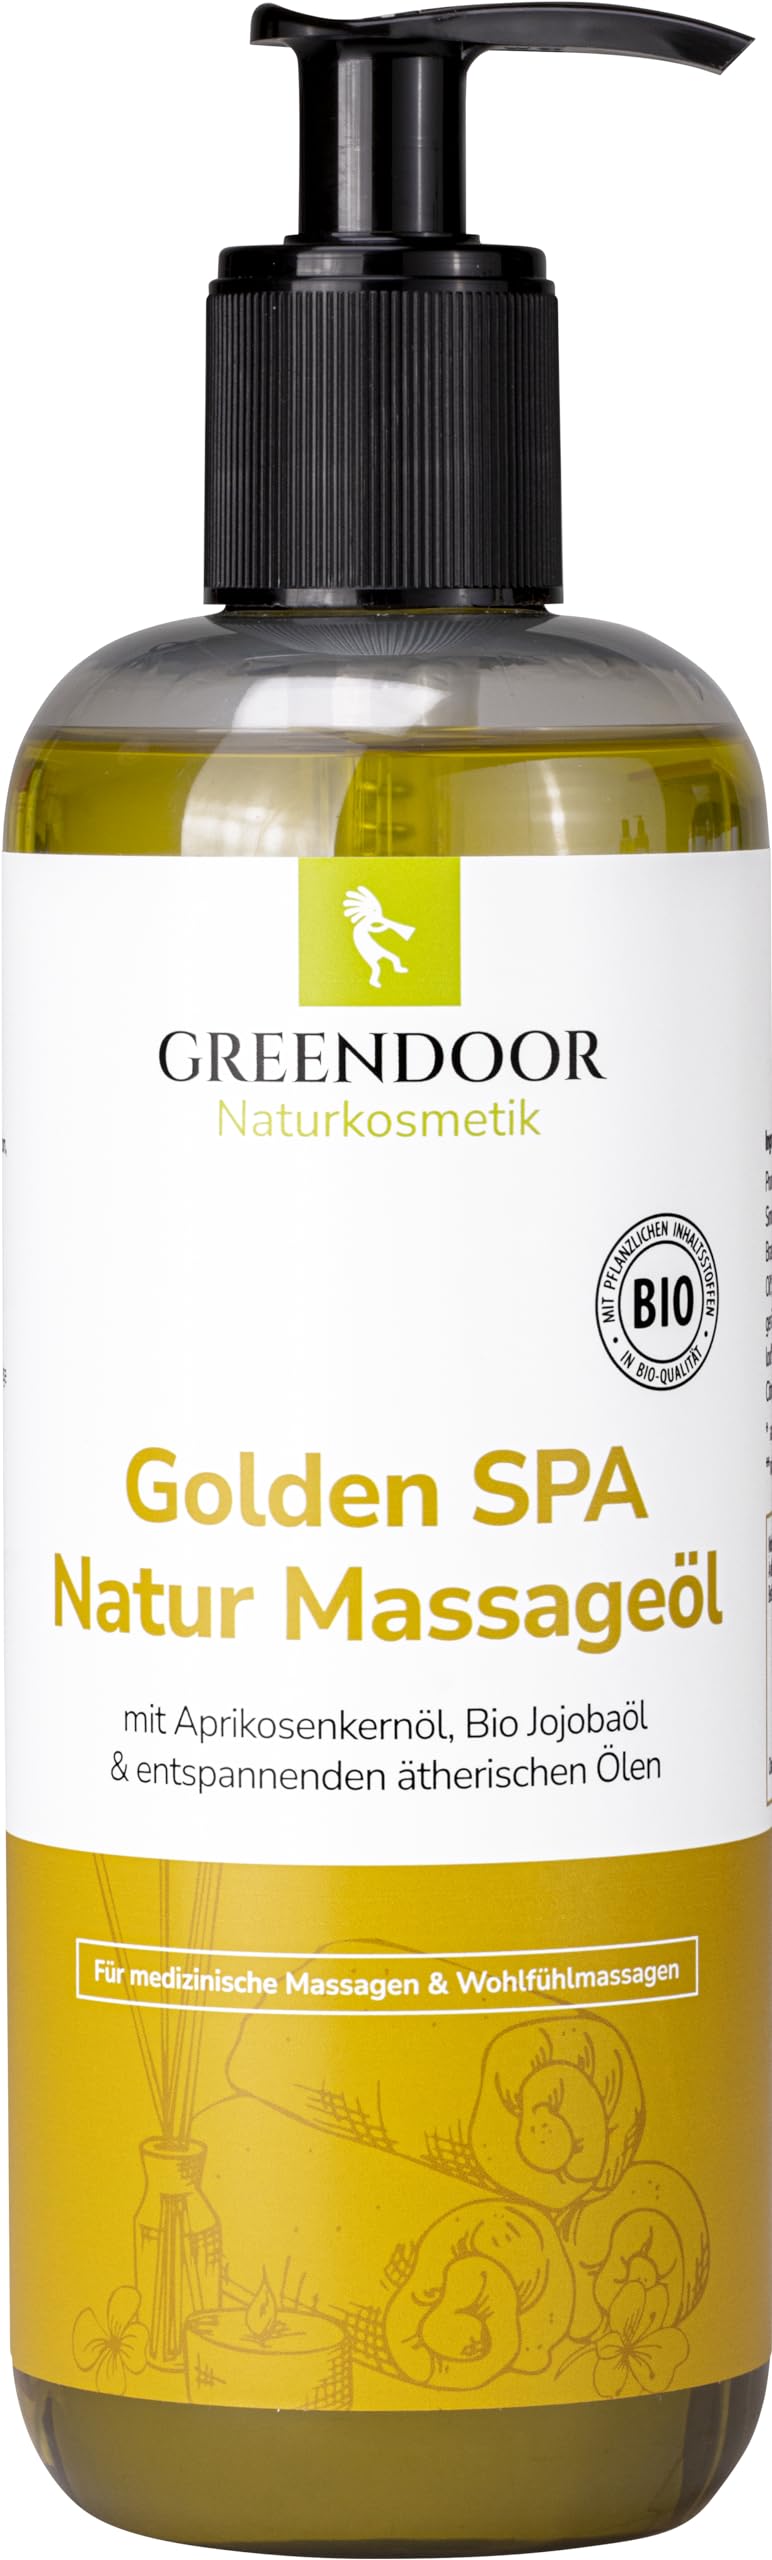 GREENDOOR Sparpackung Massageöl Golden SPA 500ml, natur-reines BIO Jojobaöl und Aprikosenkernöl, Öl für natürliche Massage, entspannender Duft, hervorragendes Körperöl, Geschenke